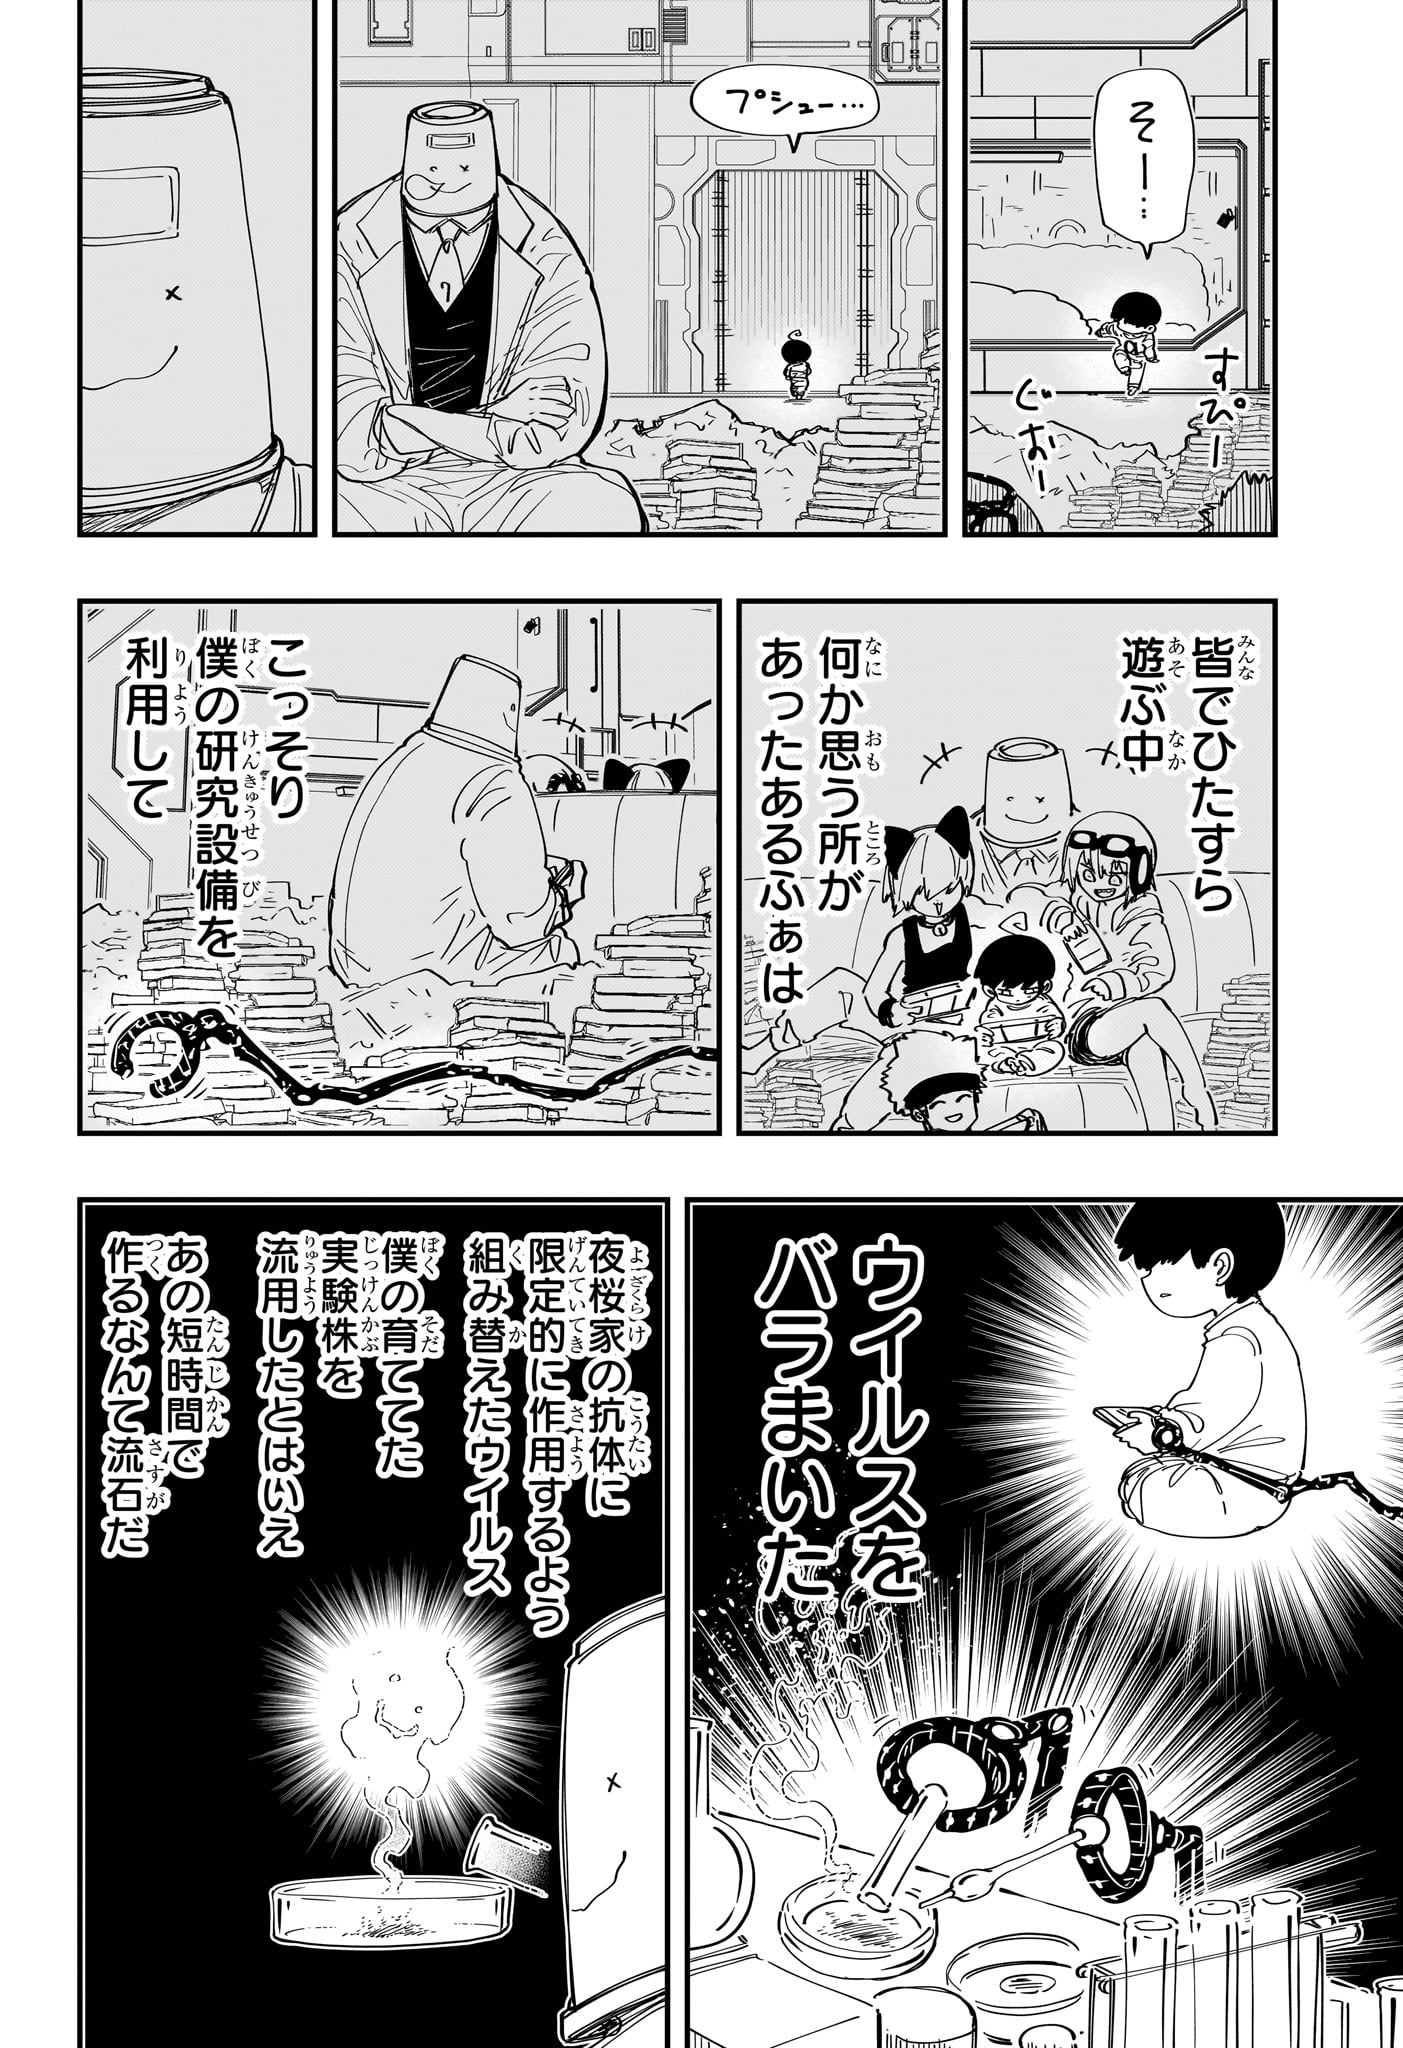 Yozakura-san Chi no Daisakusen - Chapter 217 - Page 19